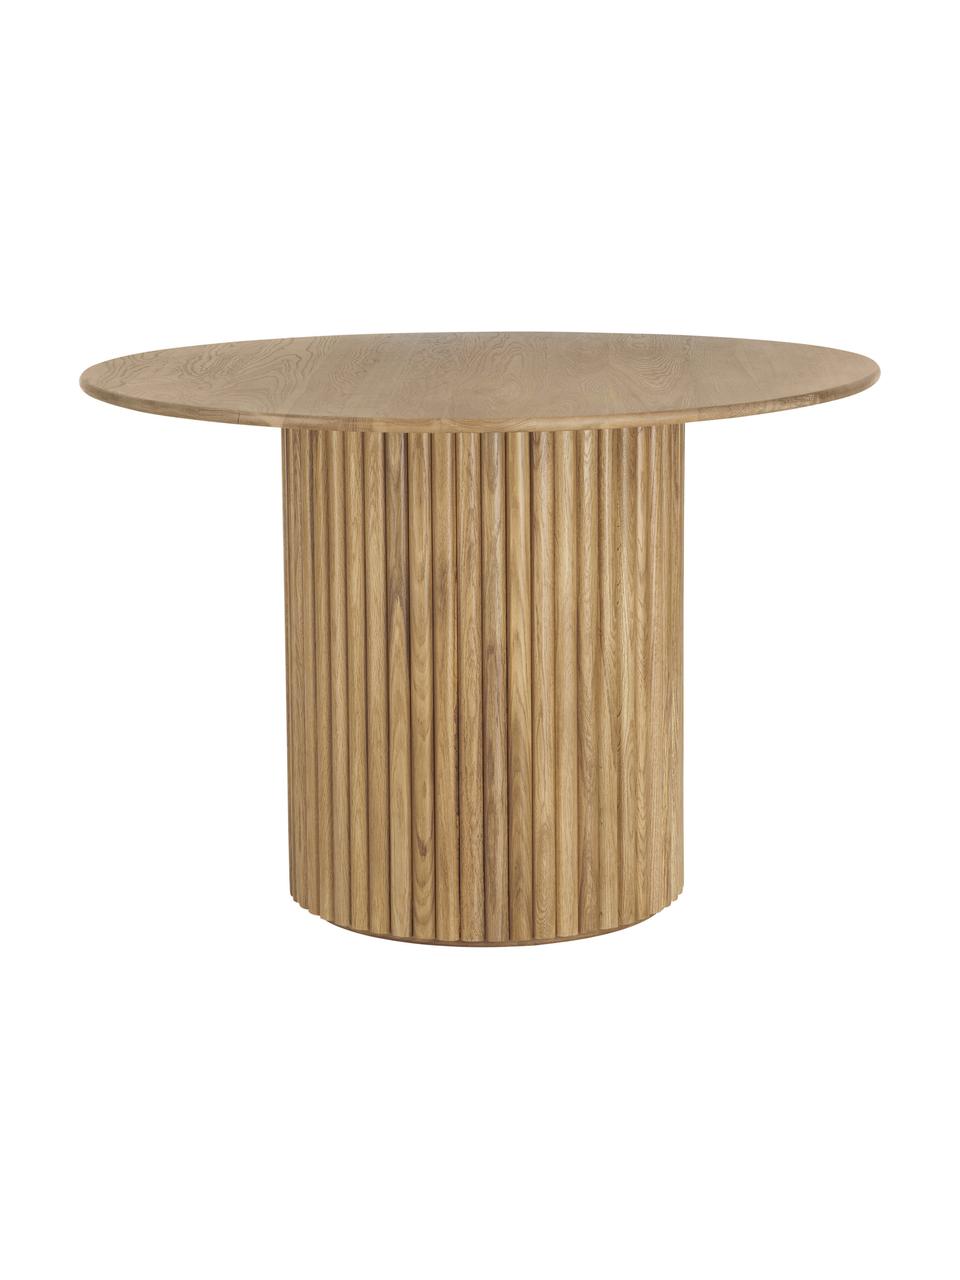 Okrągły stół do jadalni z drewna dębowego Janina, Lite drewno dębowe, płyta pilśniowa średniej gęstości (MDF) lakierowana, Drewno dębowe, lakierowane, Ø 110 x W 75 cm